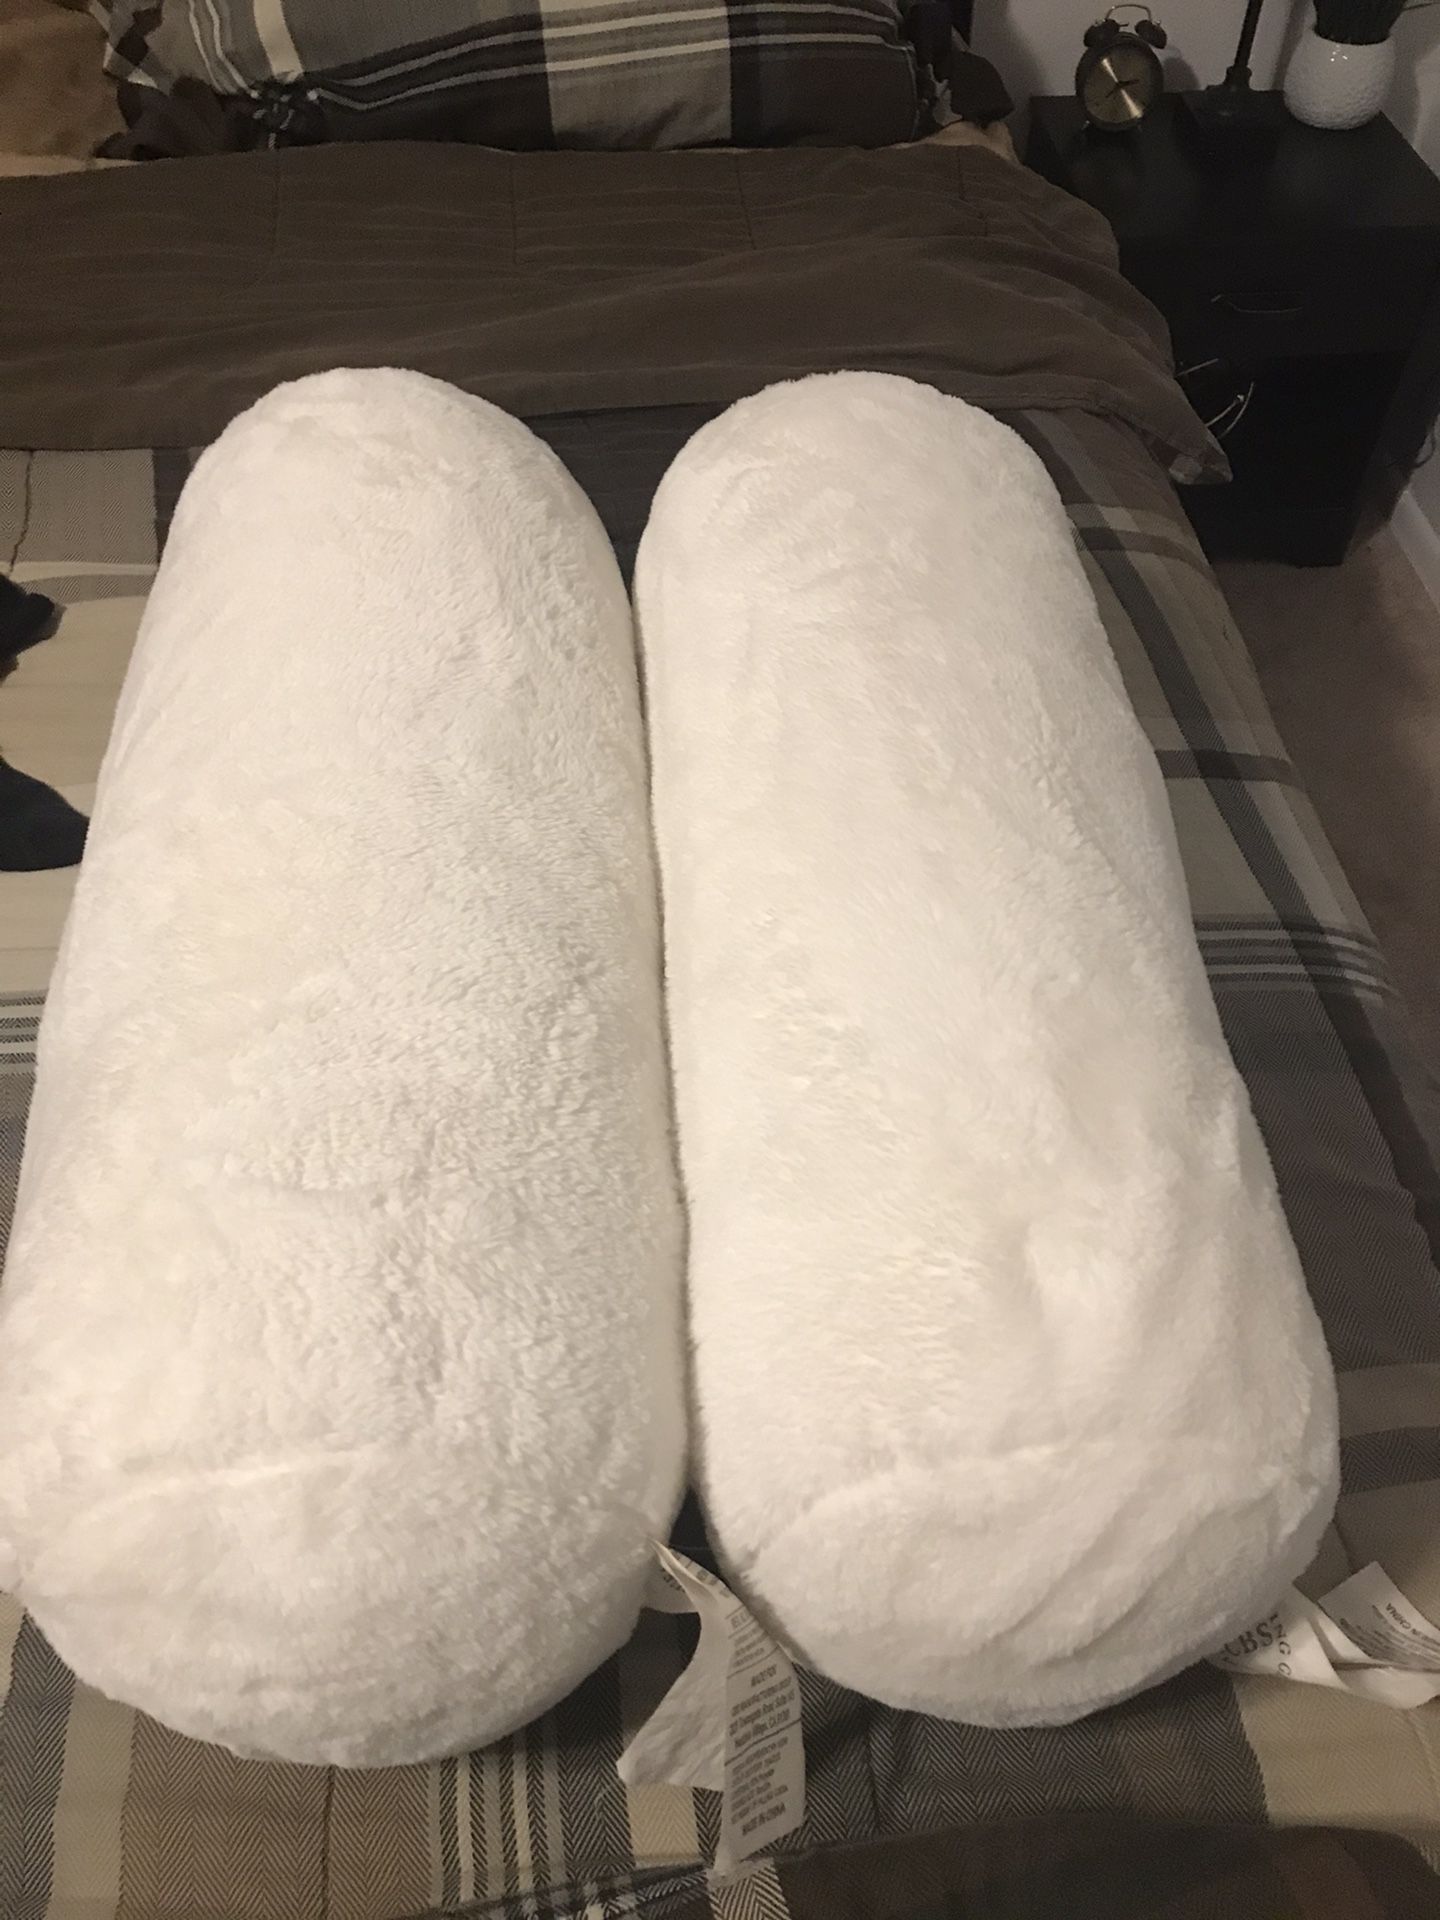 Neck roll pillows